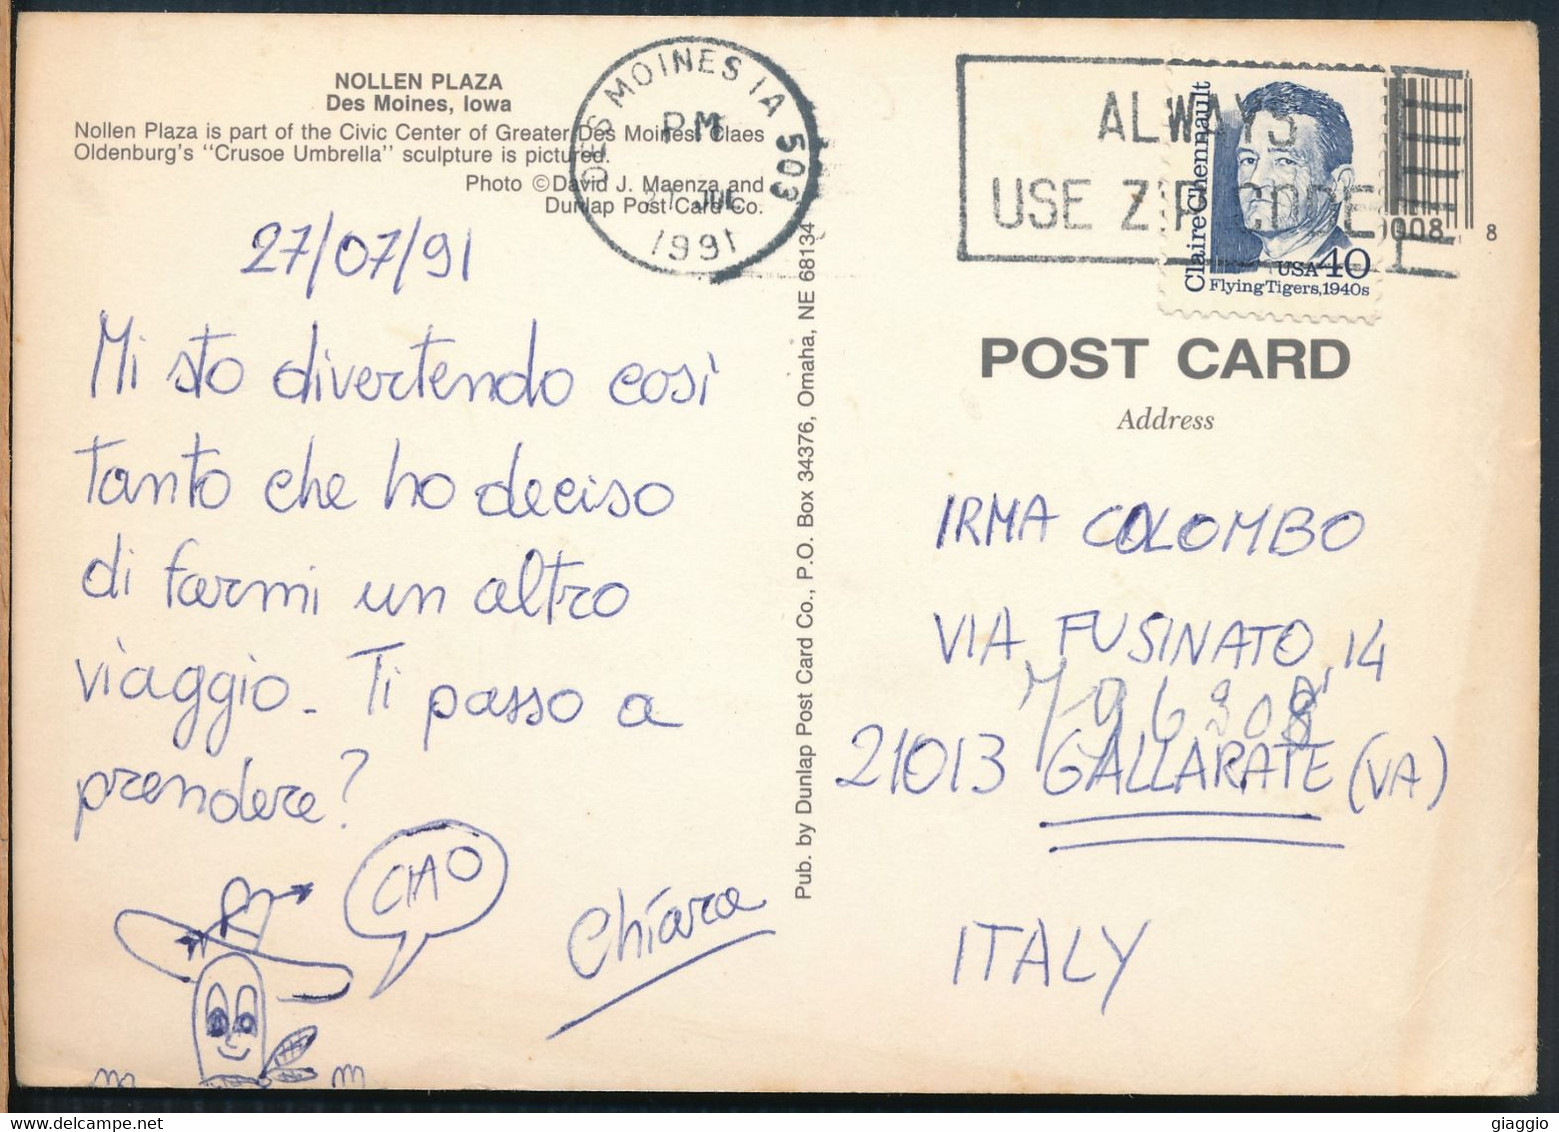 °°° 29853 - USA - IA - DES MOINES - NOLLEN PLAZA - 1991 With Stamps°°° - Des Moines